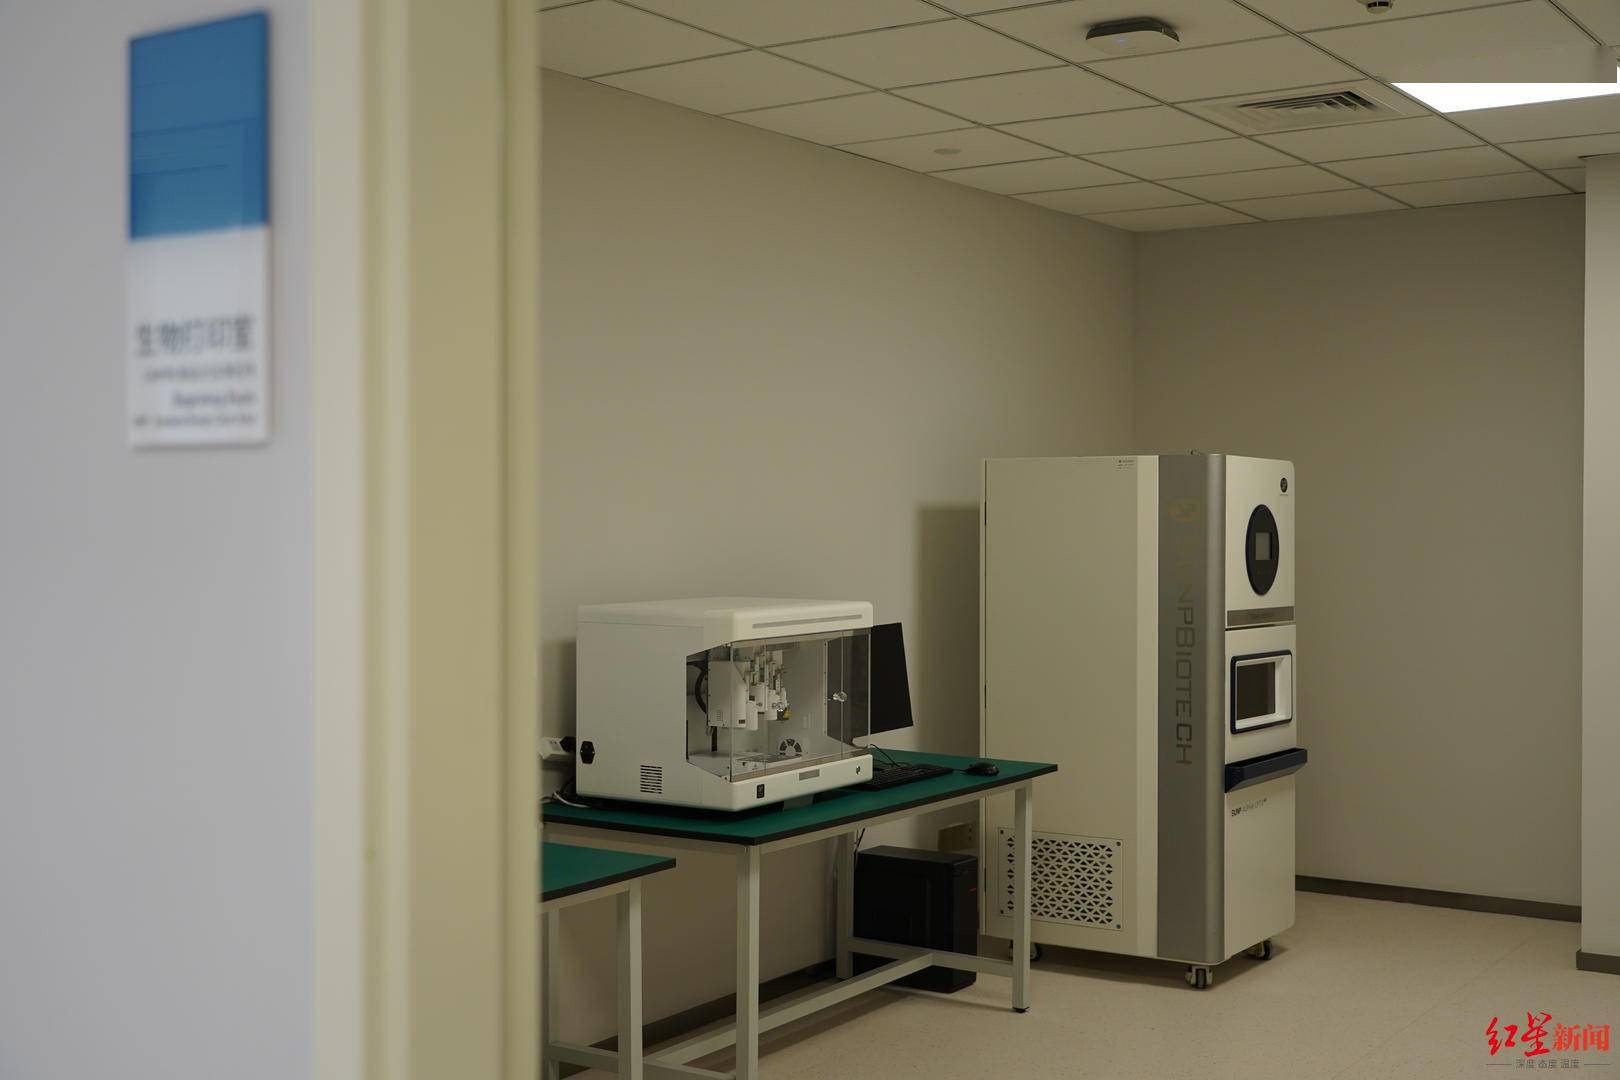 红星|3D打印眼科医学实验室在四川眼科医院落成